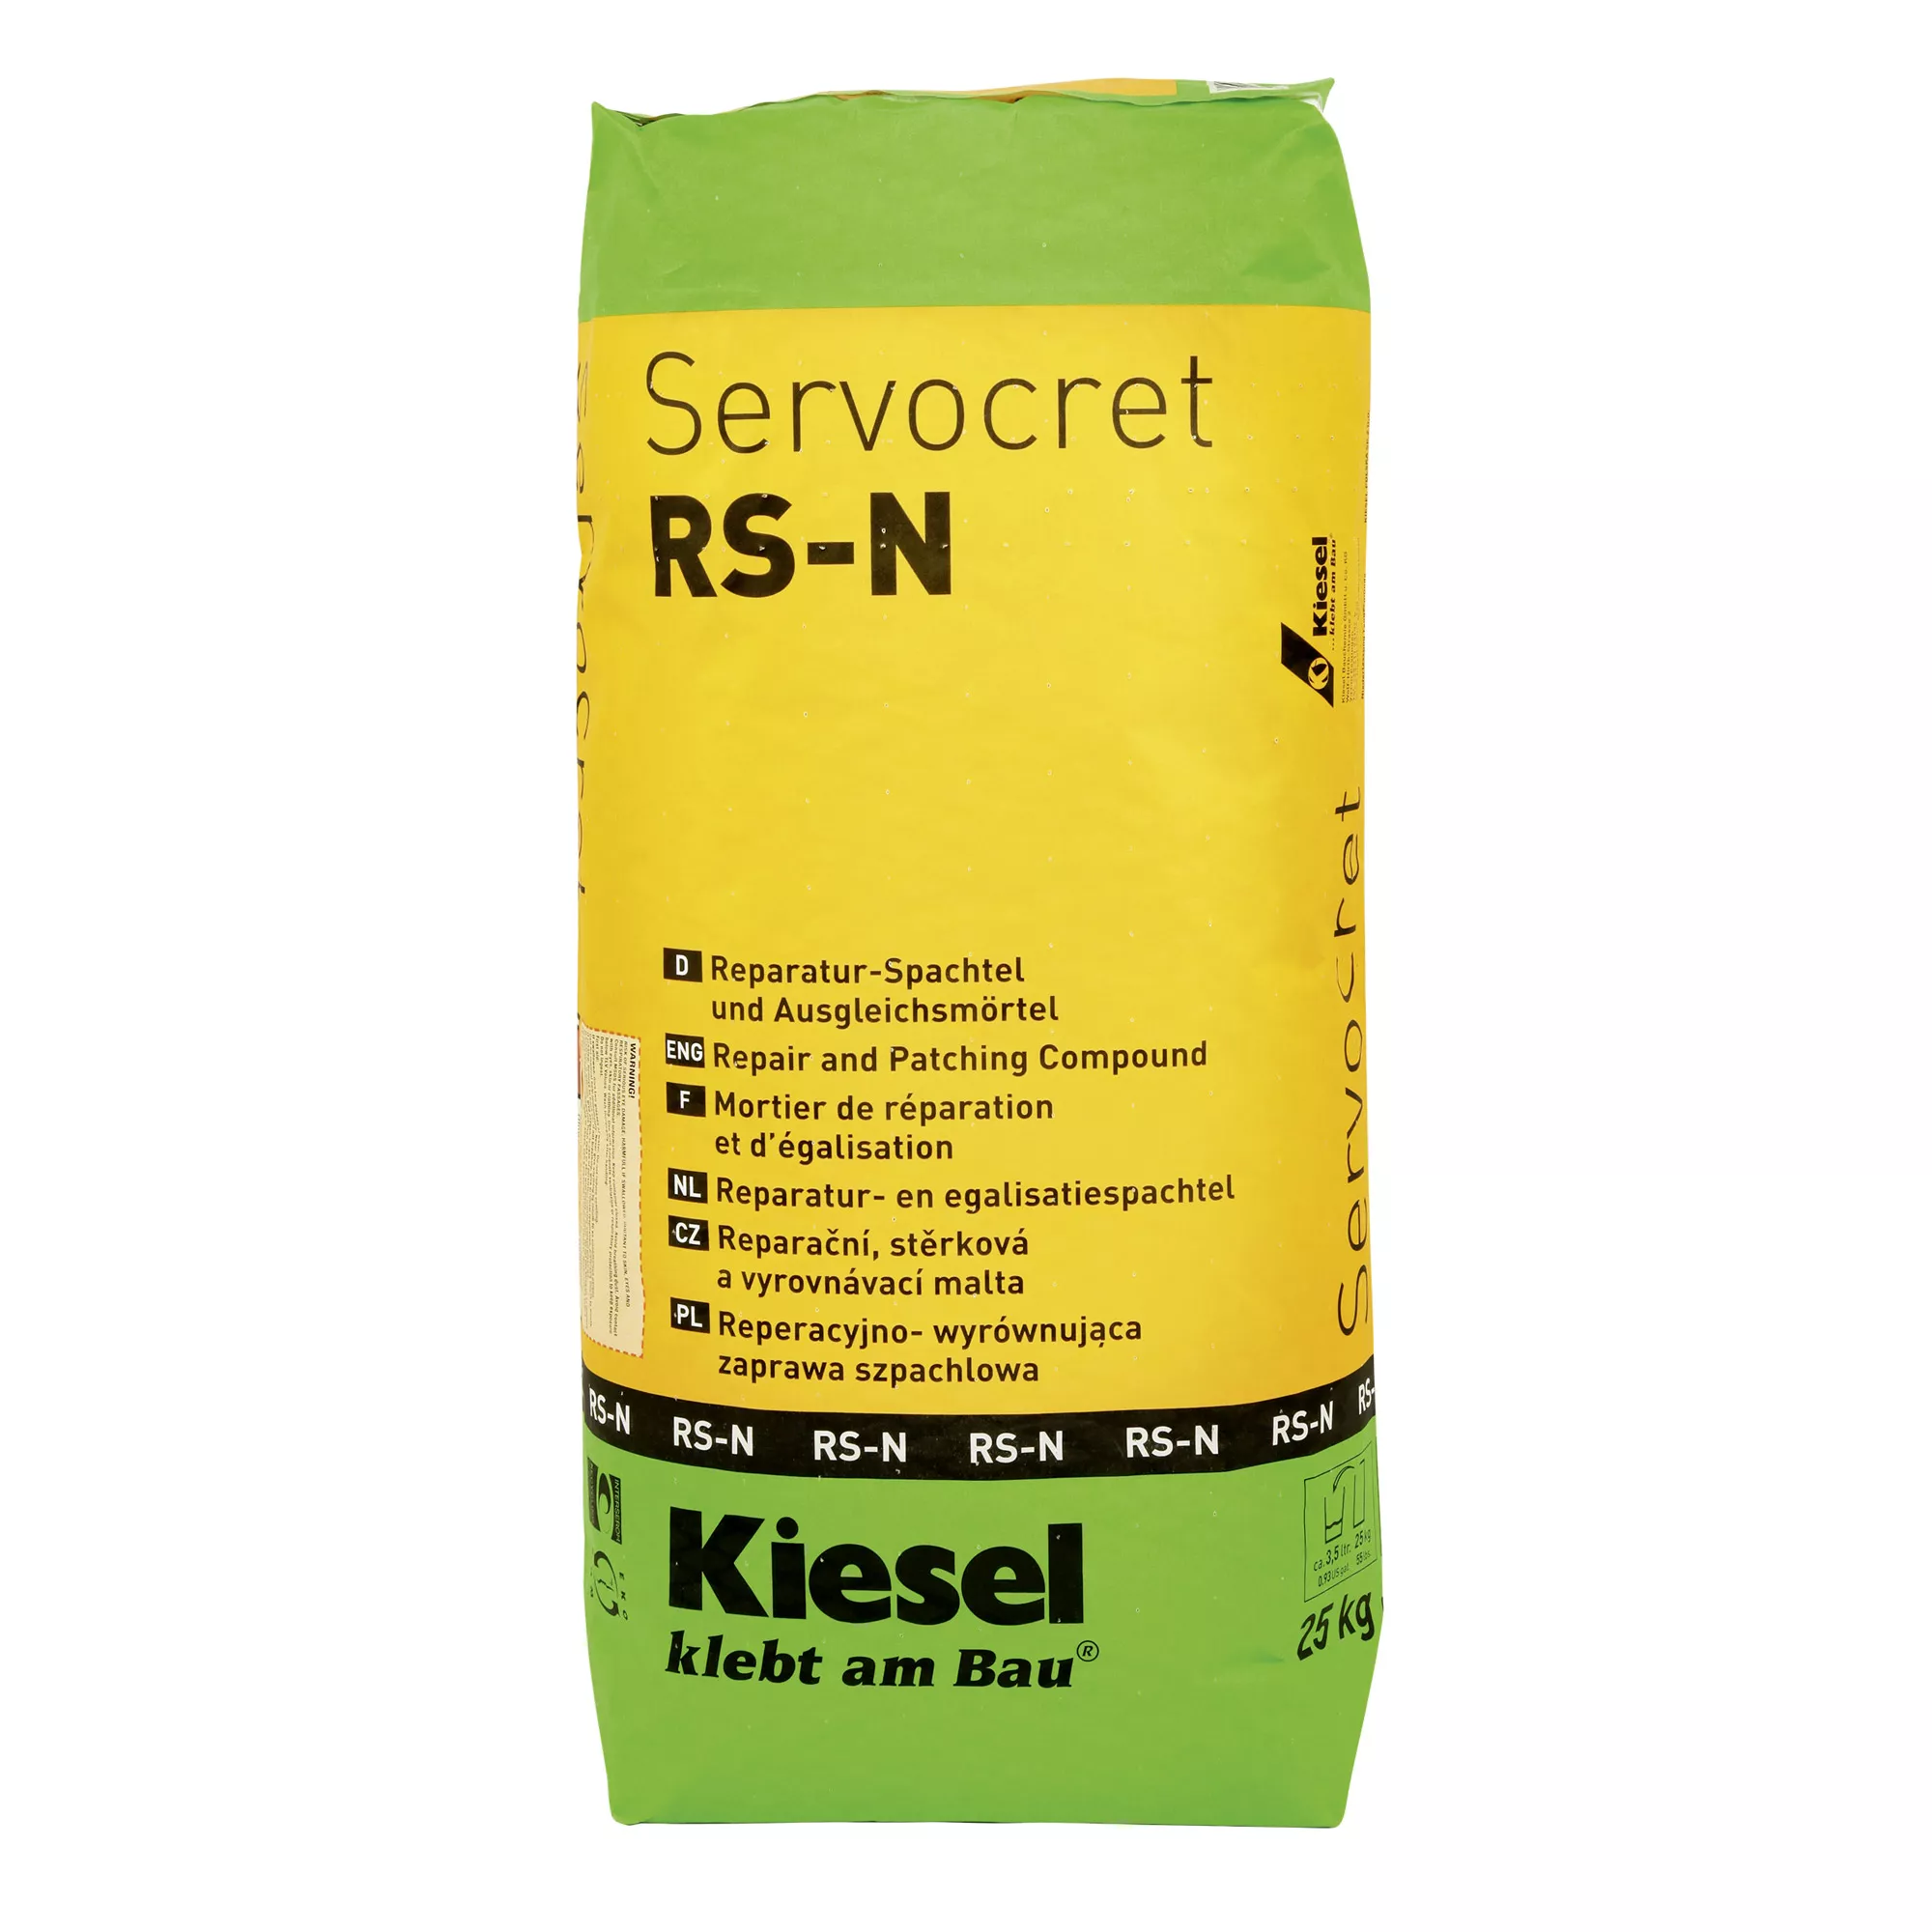 Kiesel Servocret RS-N - Reparatur Spachtel und Ausgleichsmörtel (25KG)